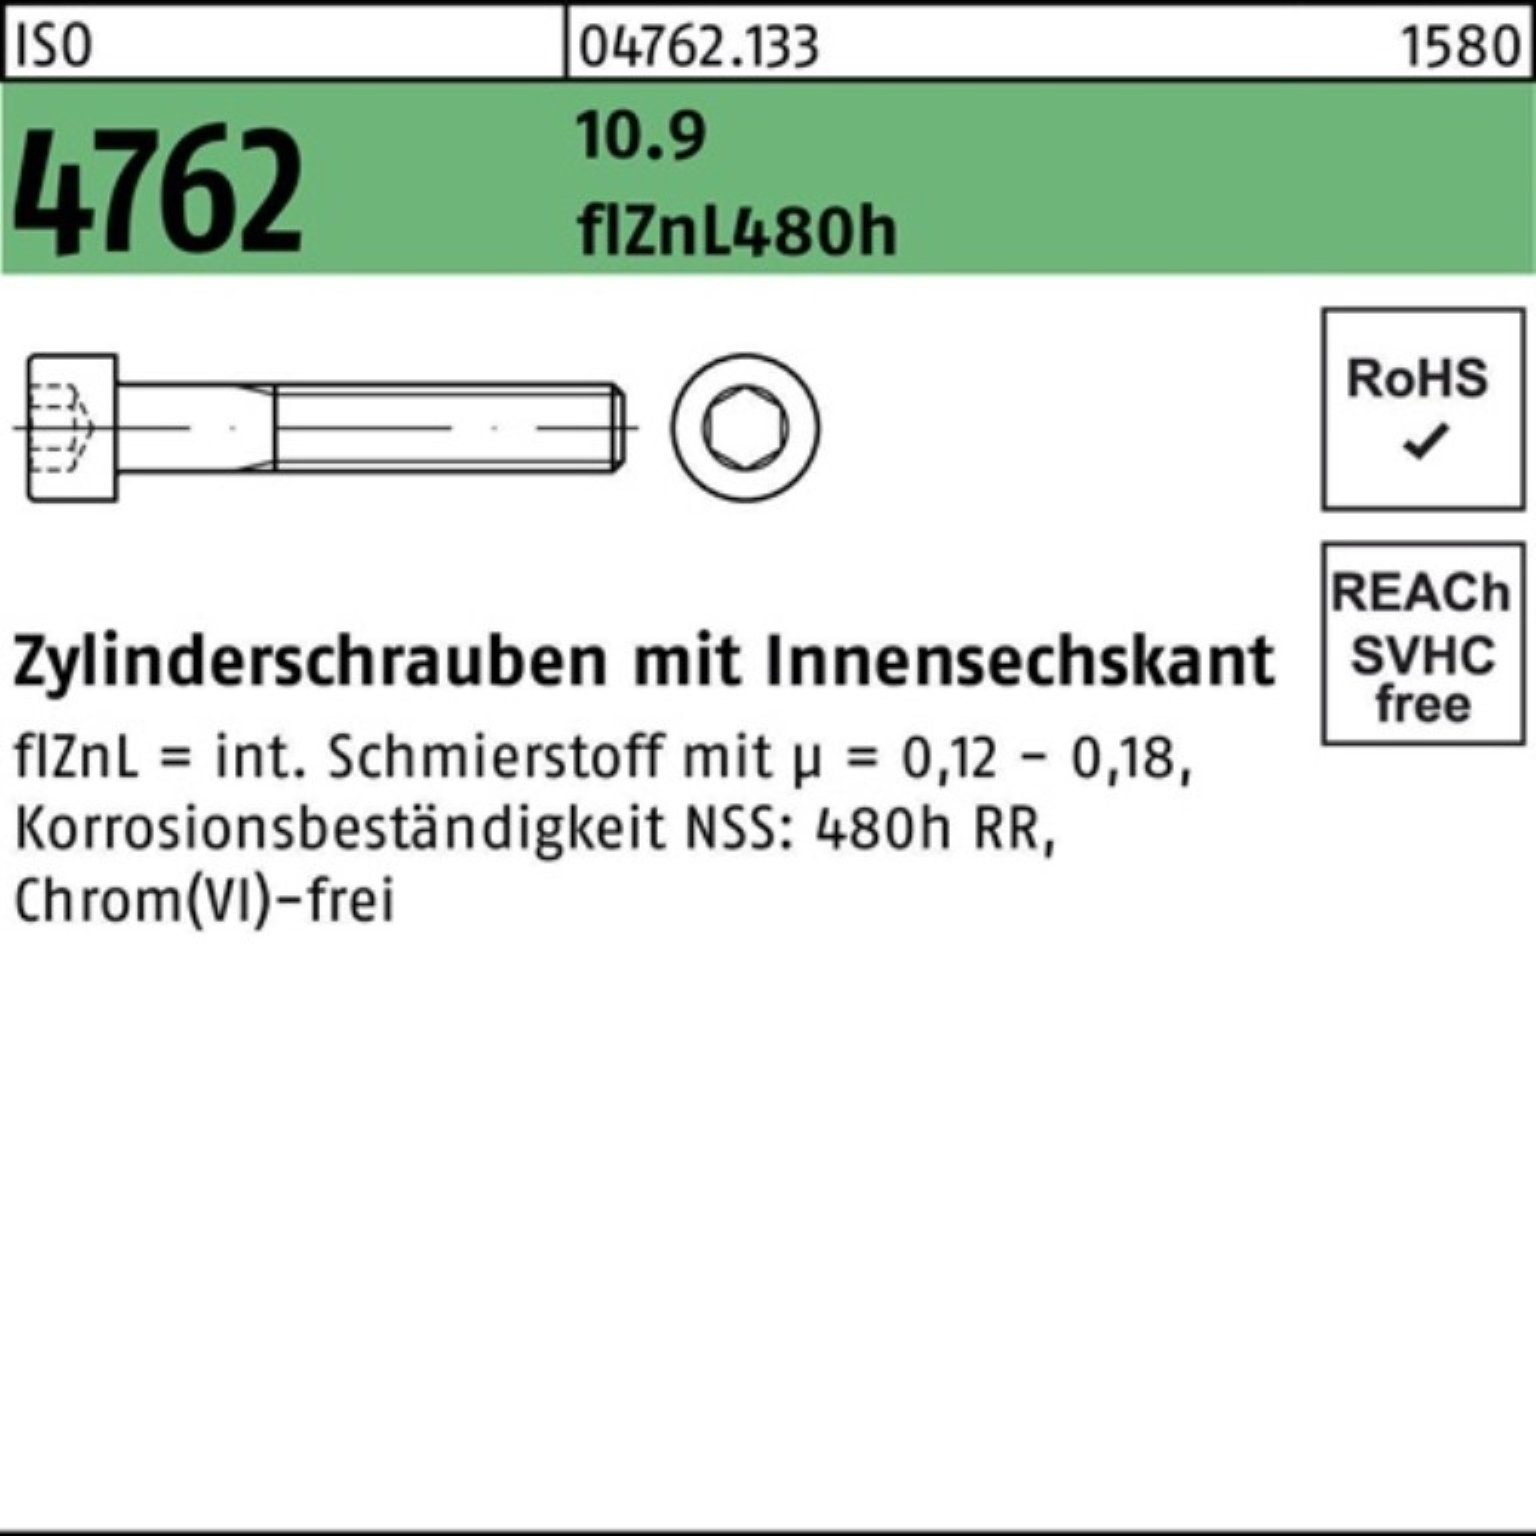 Reyher Pack Zylinderschraube zinklamellen 4762 M5x45 Innen-6kt Zylinderschraube 10.9 200er ISO